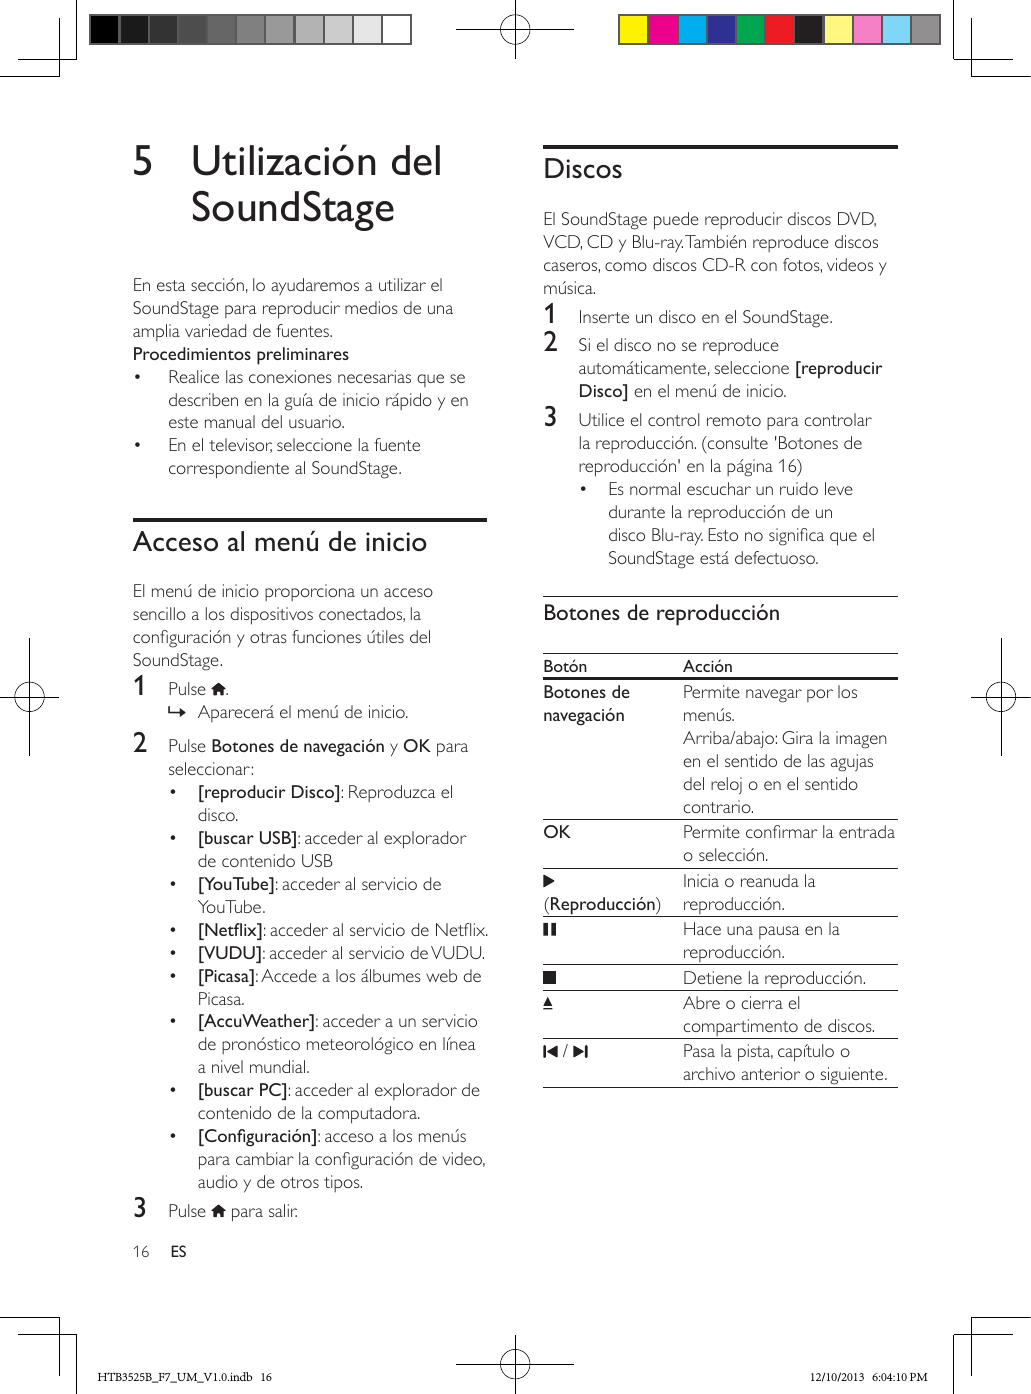 16 ES5  Utilización del SoundStageEn esta sección, lo ayudaremos a utilizar el SoundStage para reproducir medios de una amplia variedad de fuentes.Procedimientos preliminares•  Realice las conexiones necesarias que se describen en la guía de inicio rápido y en este manual del usuario.•  En el televisor, seleccione la fuente correspondiente al SoundStage.Acceso al menú de inicioEl menú de inicio proporciona un acceso sencillo a los dispositivos conectados, la conguración y otras funciones útiles del SoundStage.1  Pulse  . » Aparecerá el menú de inicio.2  Pulse Botones de navegación y OK para seleccionar:•  [reproducir Disco]: Reproduzca el disco.•  [buscar USB]: acceder al explorador de contenido USB•  [YouTube]: acceder al servicio de YouTube.•  [Netix]: acceder al servicio de Netix.•  [VUDU]: acceder al servicio de VUDU.•  [Picasa]: Accede a los álbumes web de Picasa.•  [AccuWeather]: acceder a un servicio de pronóstico meteorológico en línea a nivel mundial.•  [buscar PC]: acceder al explorador de contenido de la computadora.•  [Conguración]: acceso a los menús para cambiar la conguración de video, audio y de otros tipos.3  Pulse   para salir.DiscosEl SoundStage puede reproducir discos DVD, VCD, CD y Blu-ray. También reproduce discos caseros, como discos CD-R con fotos, videos y música.1  Inserte un disco en el SoundStage.2  Si el disco no se reproduce automáticamente, seleccione [reproducir Disco] en el menú de inicio.3  Utilice el control remoto para controlar la reproducción. (consulte &apos;Botones de reproducción&apos; en la página 16)•  Es normal escuchar un ruido leve durante la reproducción de un disco Blu-ray. Esto no signica que el SoundStage está defectuoso.Botones de reproducciónBotón AcciónBotones de navegaciónPermite navegar por los menús. Arriba/abajo: Gira la imagen en el sentido de las agujas del reloj o en el sentido contrario.OK  Permite conrmar la entrada o selección. (Reproducción)Inicia o reanuda la reproducción.   Hace una pausa en la reproducción.   Detiene la reproducción. Abre o cierra el compartimento de discos. /     Pasa la pista, capítulo o archivo anterior o siguiente.HTB3525B_F7_UM_V1.0.indb   16 12/10/2013   6:04:10 PM